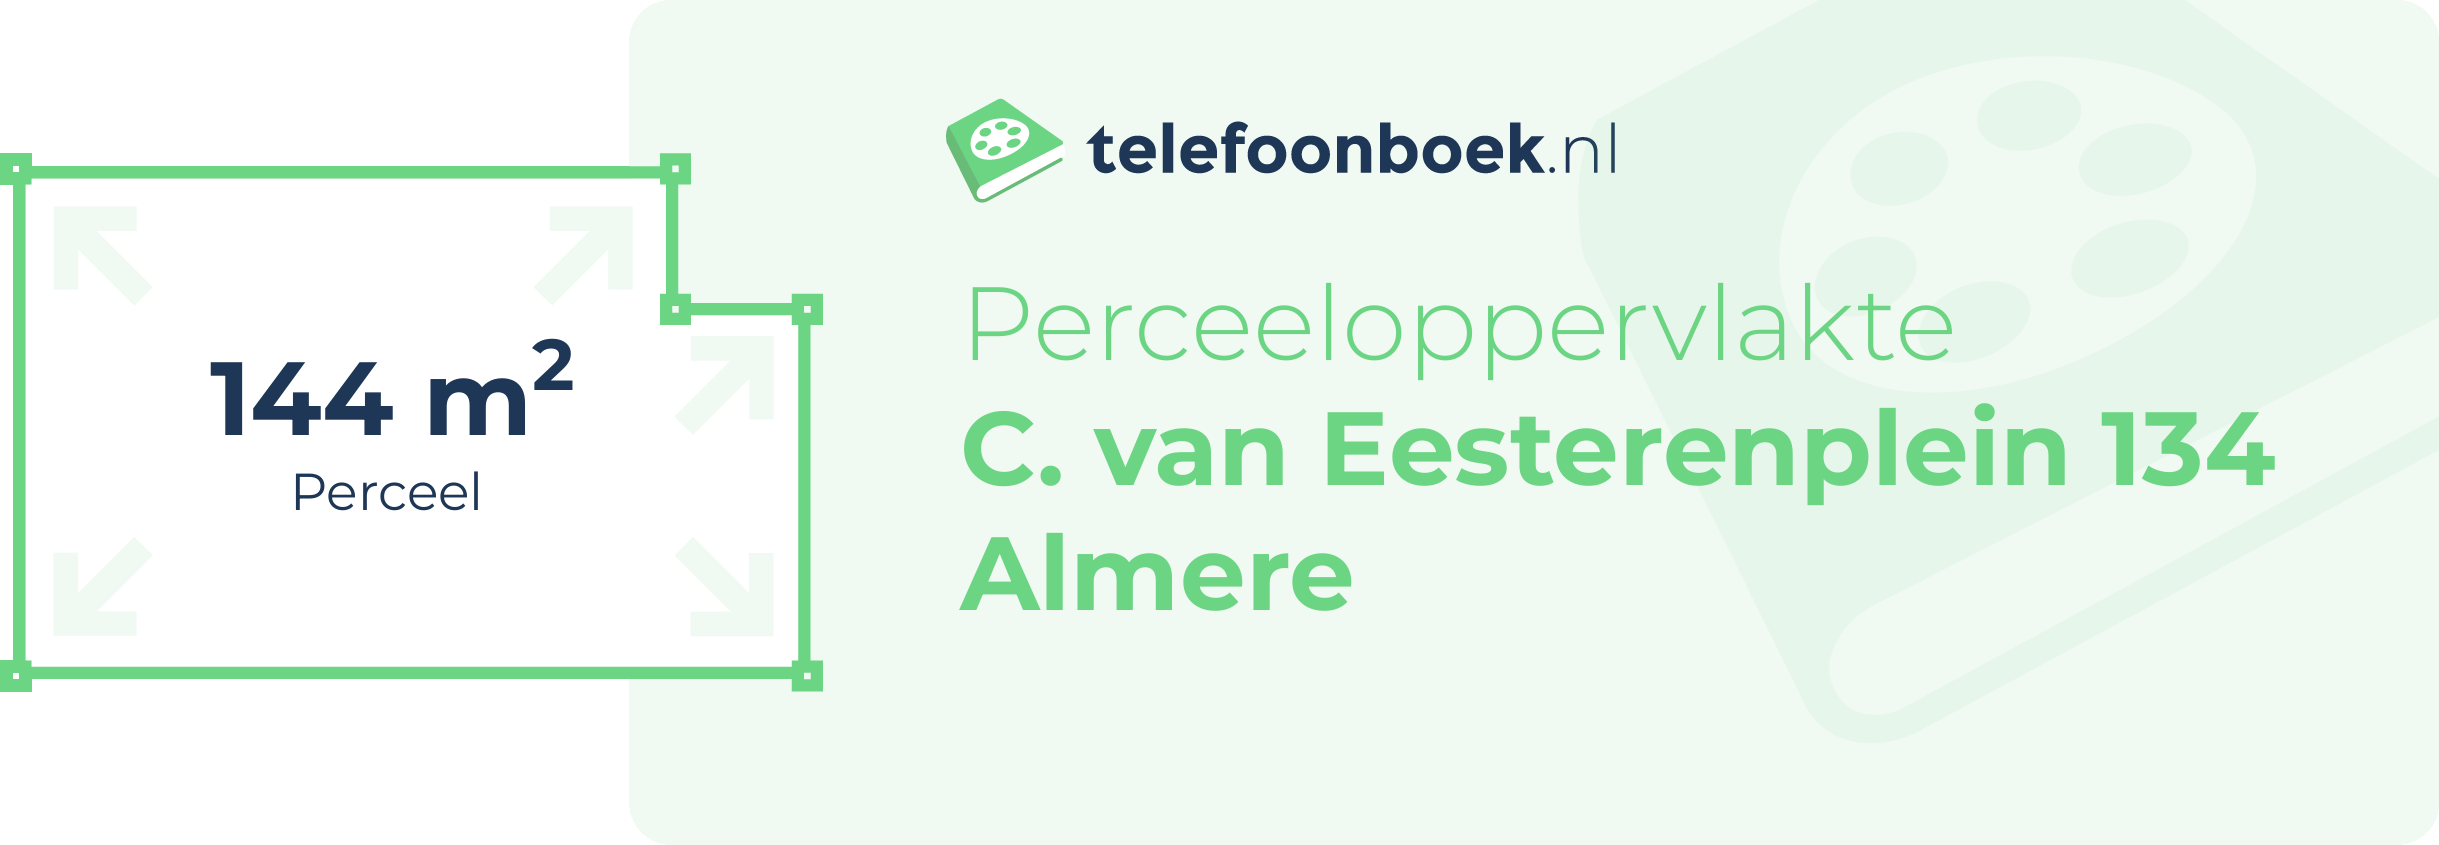 Perceeloppervlakte C. Van Eesterenplein 134 Almere